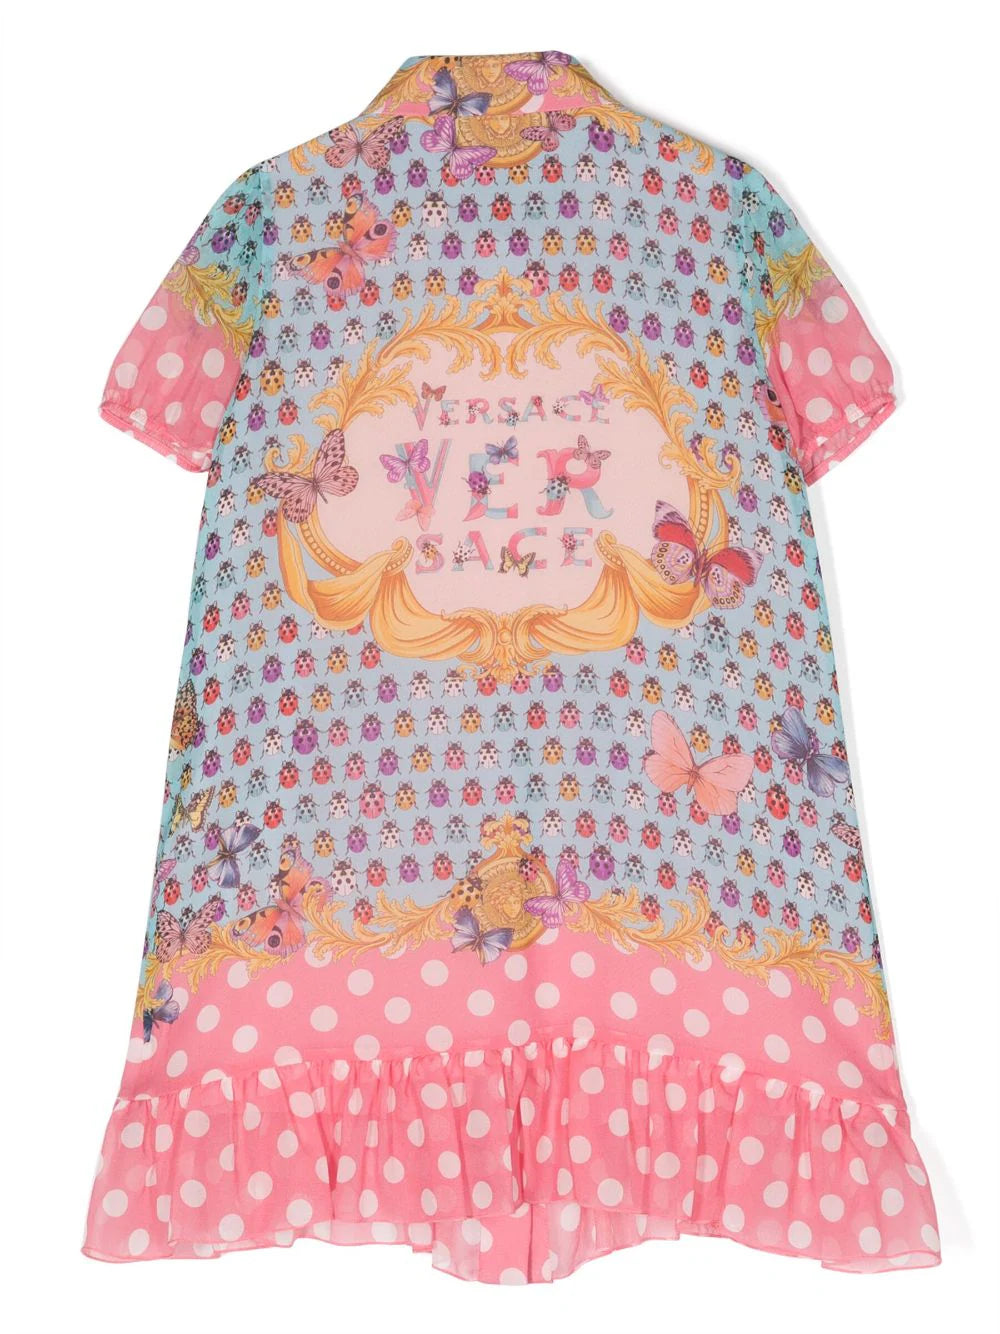 VERSACE KIDS Girls Butterflies Silk Dress Pink/Multicolour - MAISONDEFASHION.COM